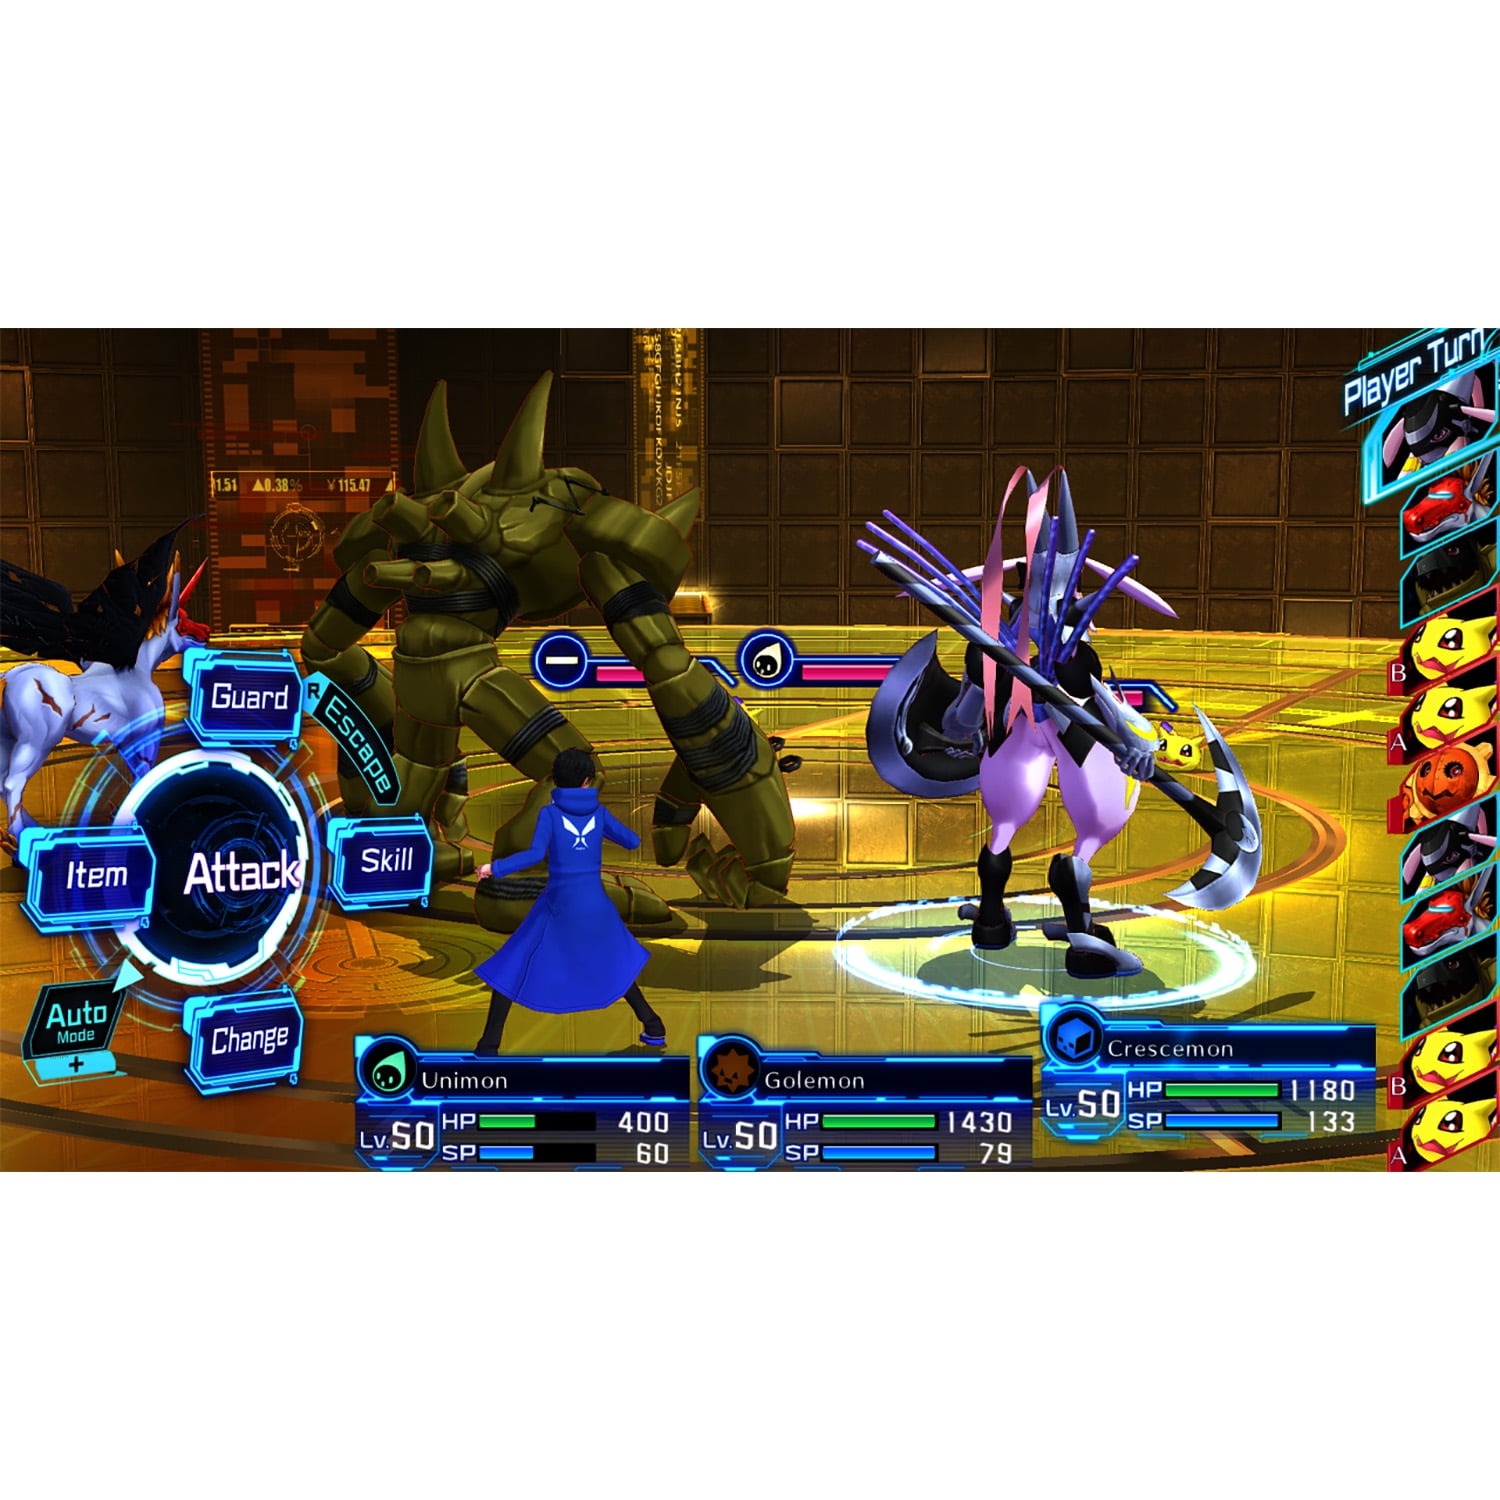 Nintendo Switch Digimon Story: Cyber Sleuth Complete Edition Código de  Descarga